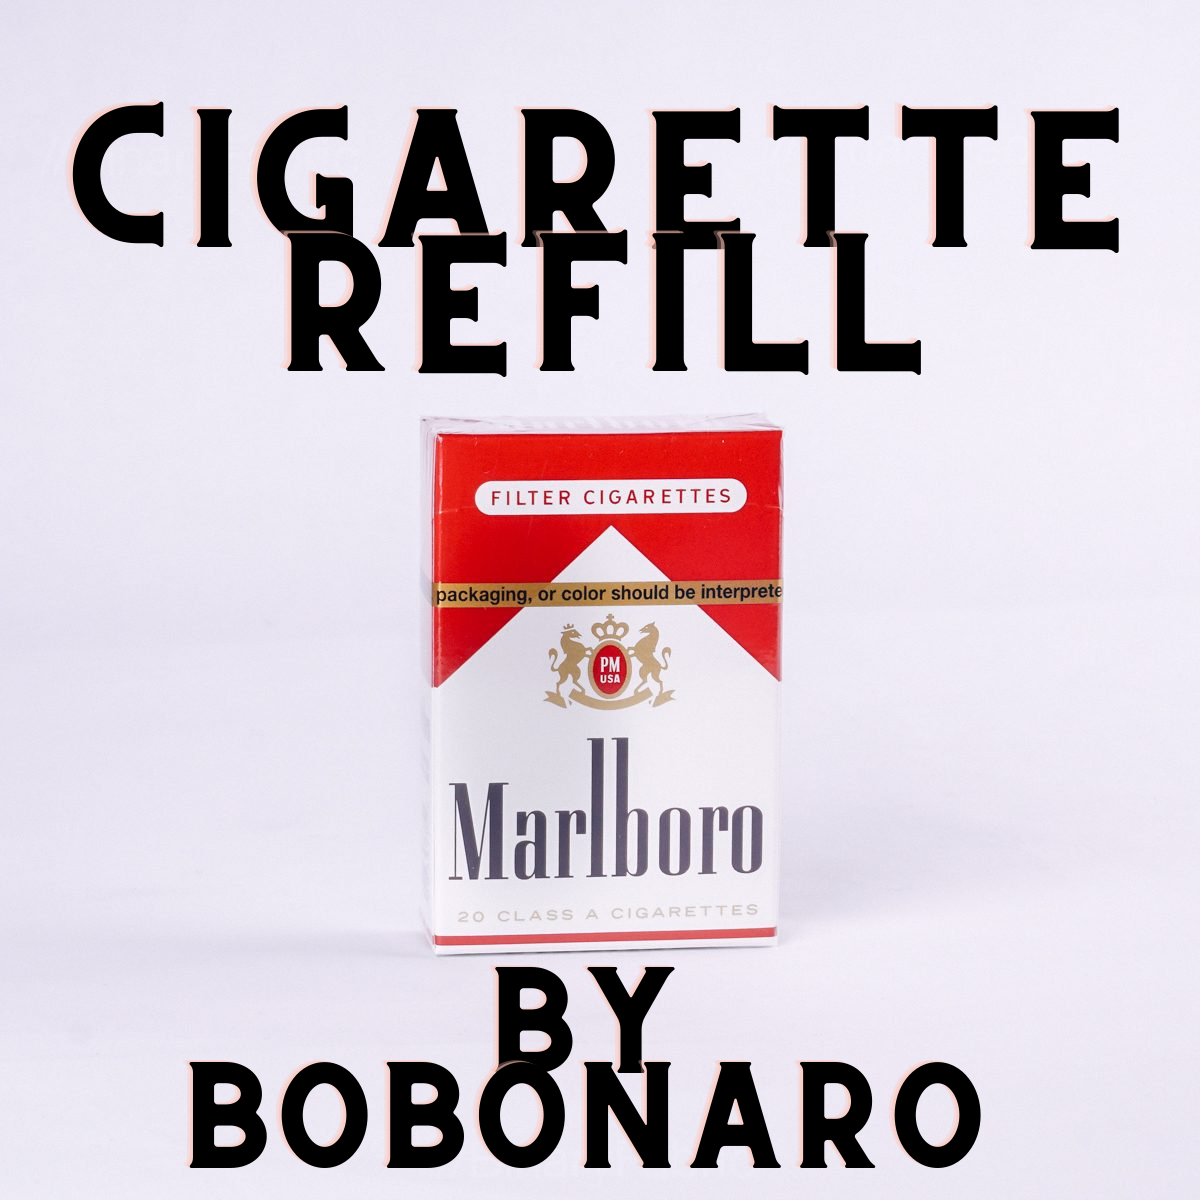 CIGARETTE REFILL - Bobonaro - The Online Magic Store